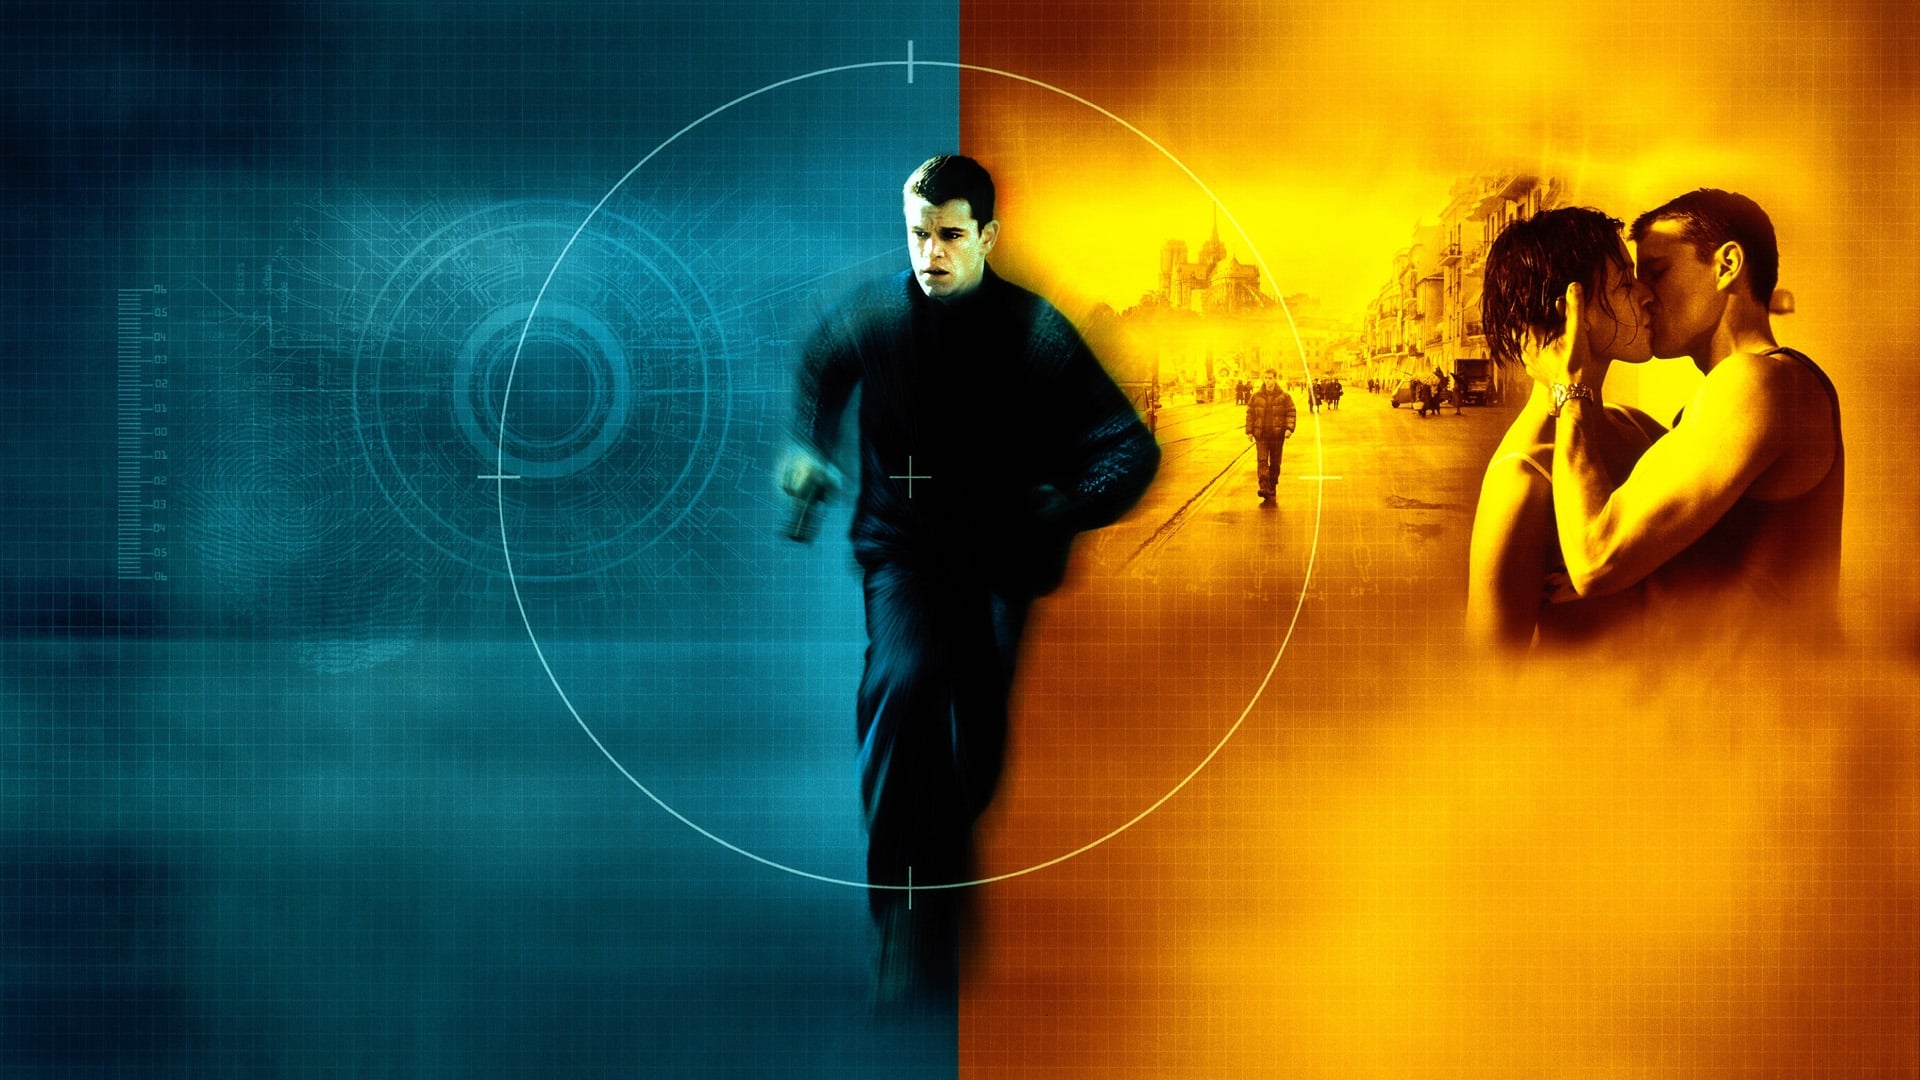 Hồ Sơ Điệp Viên Bourne - The Bourne Identity